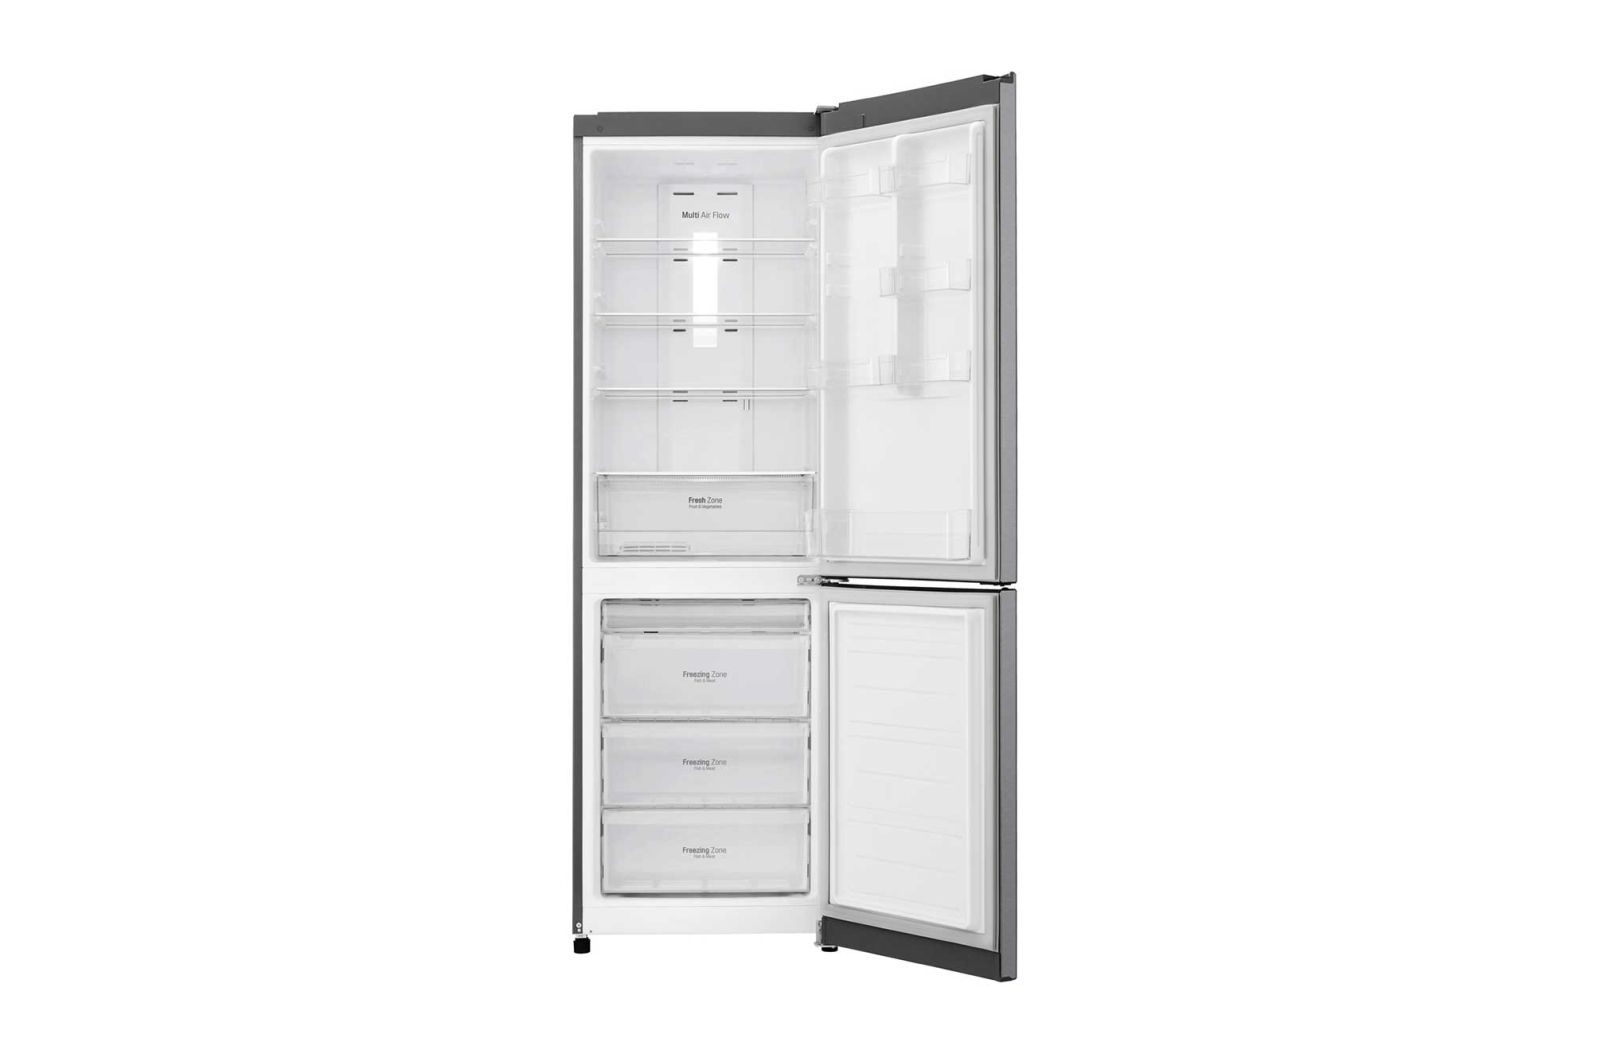 холодильник lg ga-b419slgl, купить в Красноярске холодильник lg ga-b419slgl,  купить в Красноярске дешево холодильник lg ga-b419slgl, купить в Красноярске минимальной цене холодильник lg ga-b419slgl